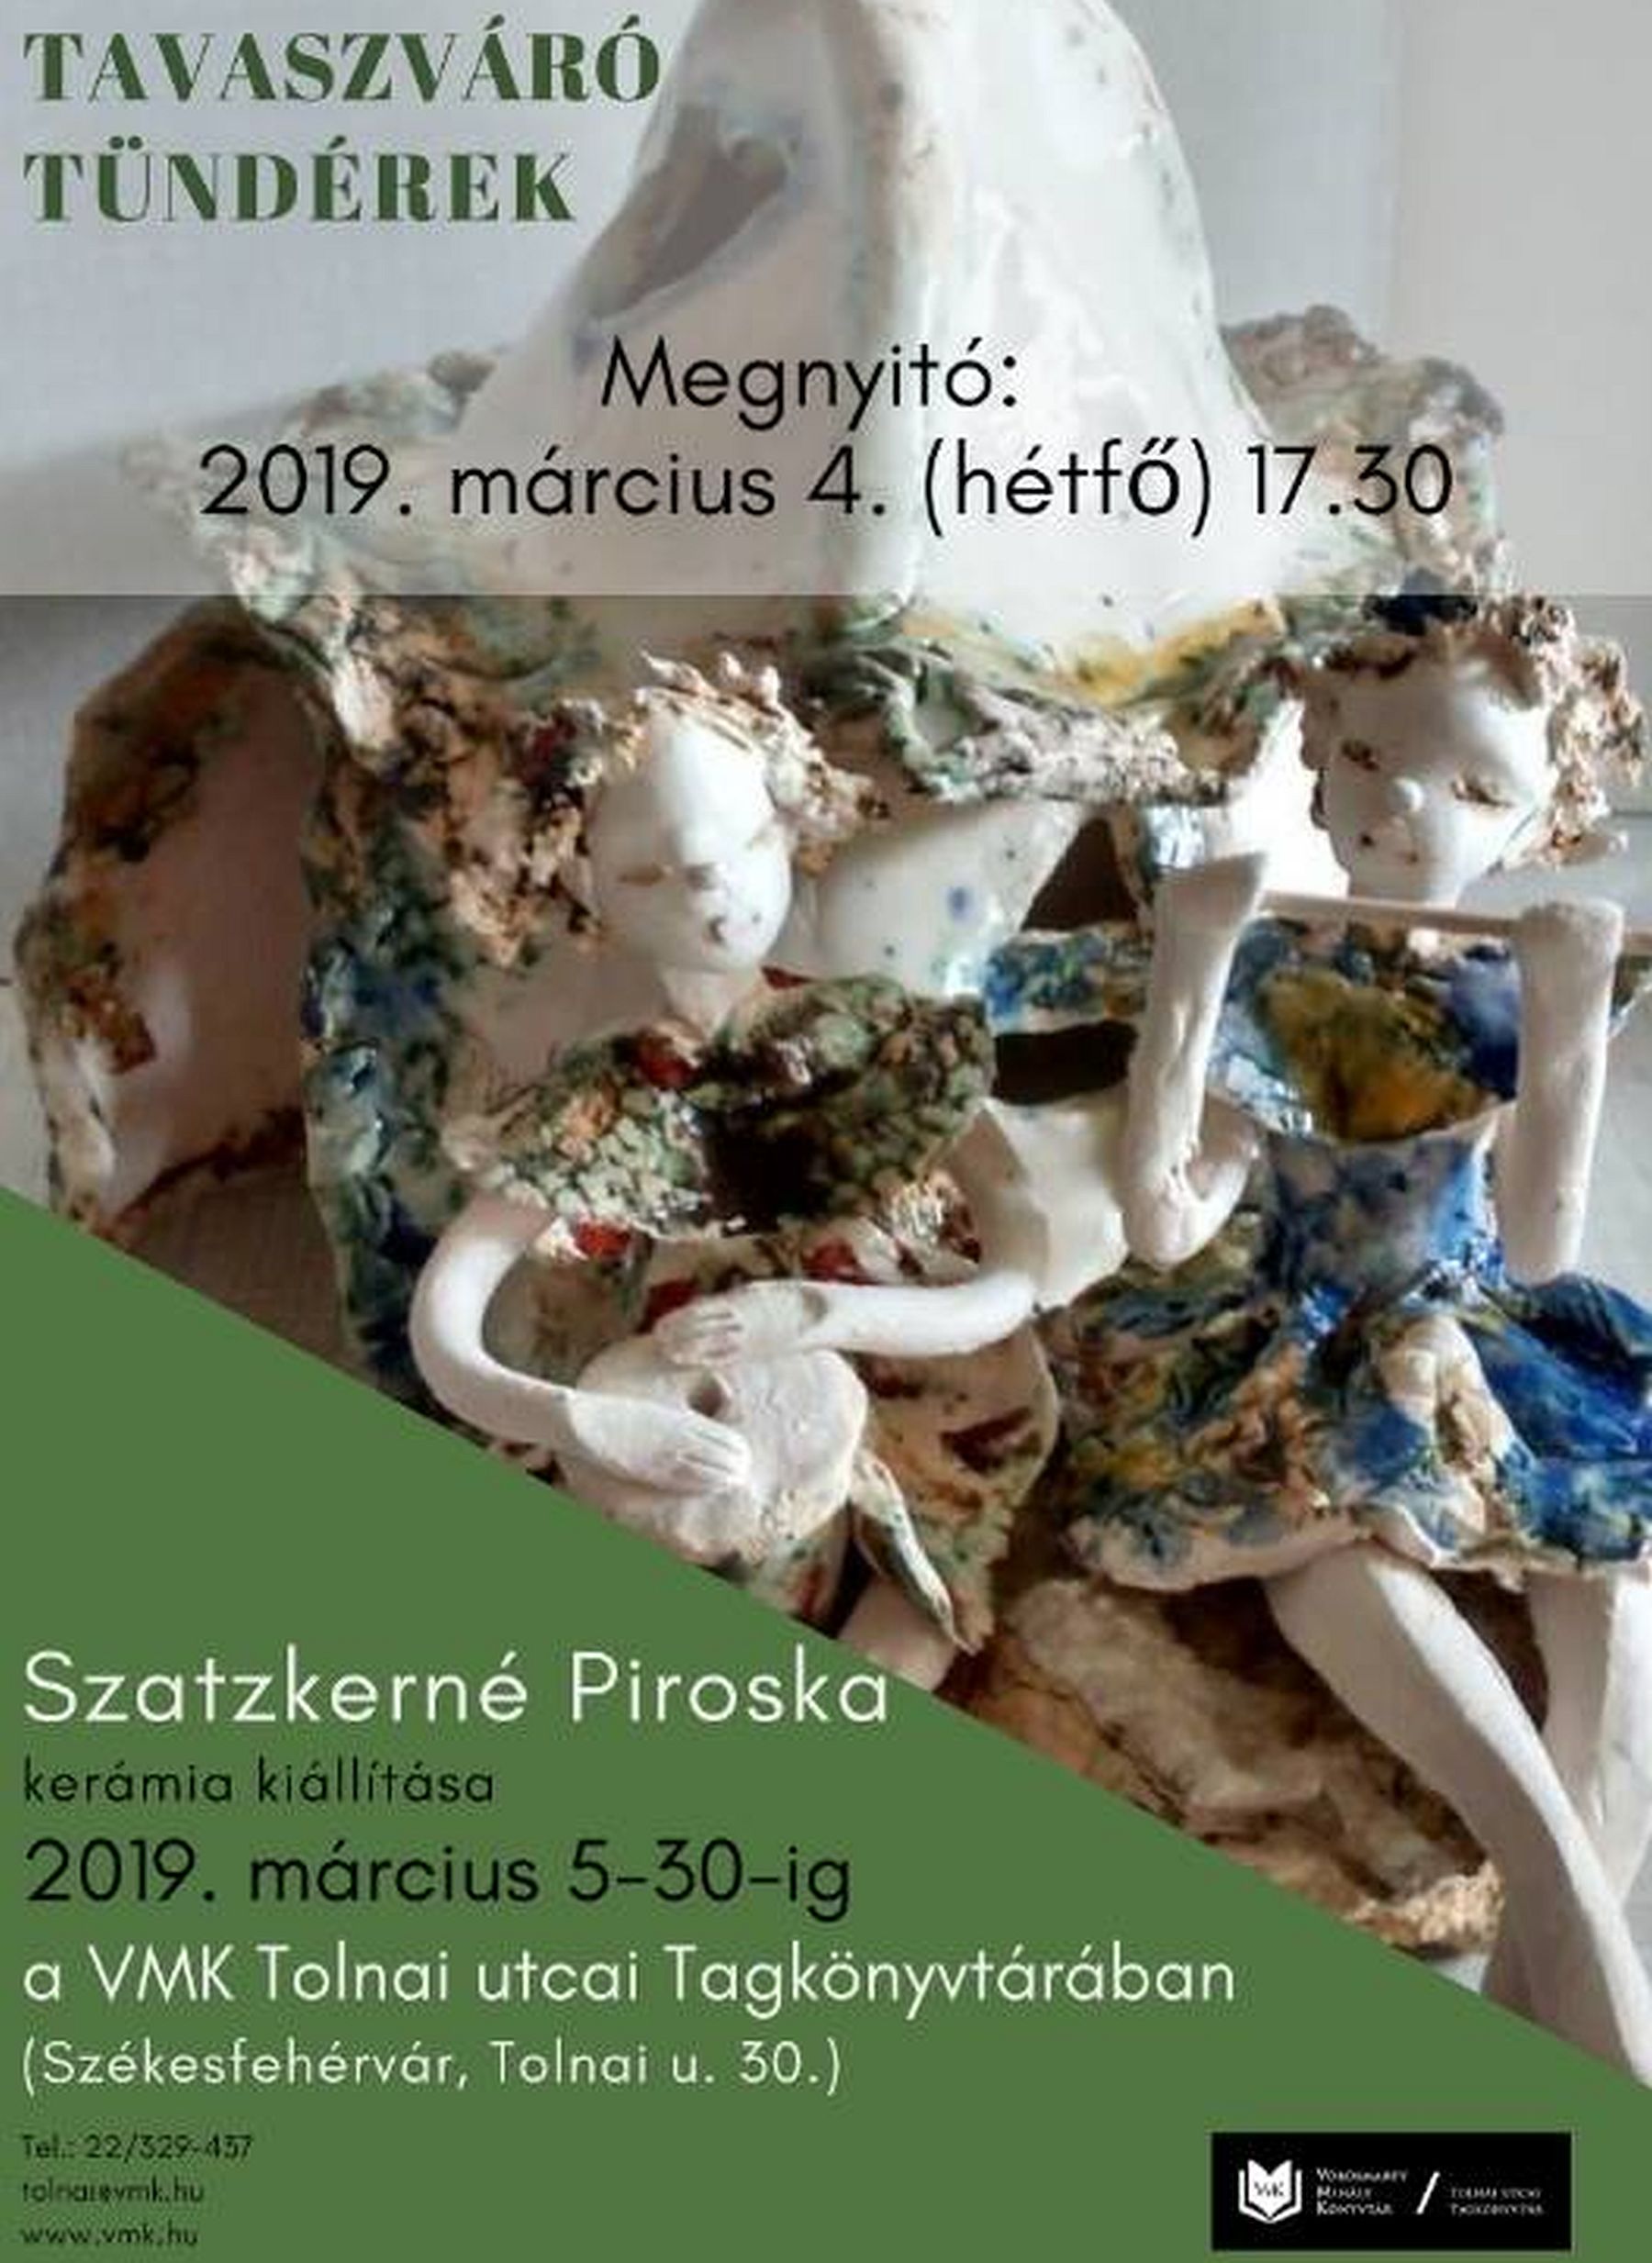 Tavaszváró tündérek - Szatzkerné Piroska kerámiakiállítása nyílik Tolnai utcai Tagkönyvtárban